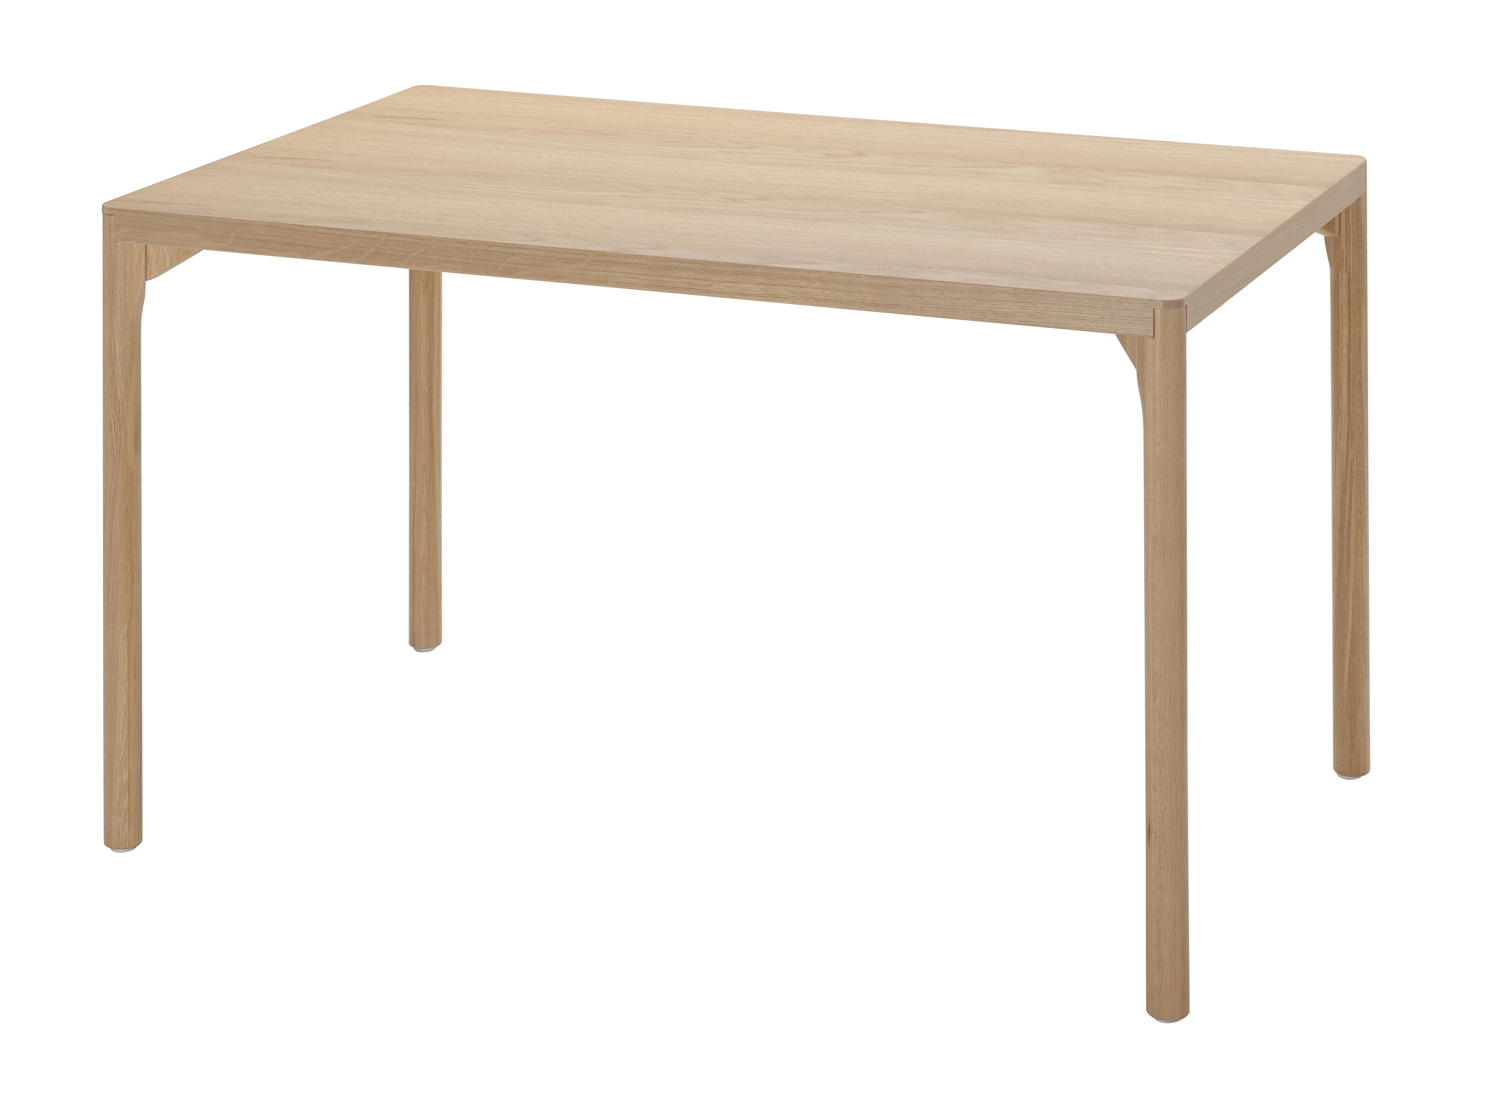 IKEA_RÅVAROR_dining table €169